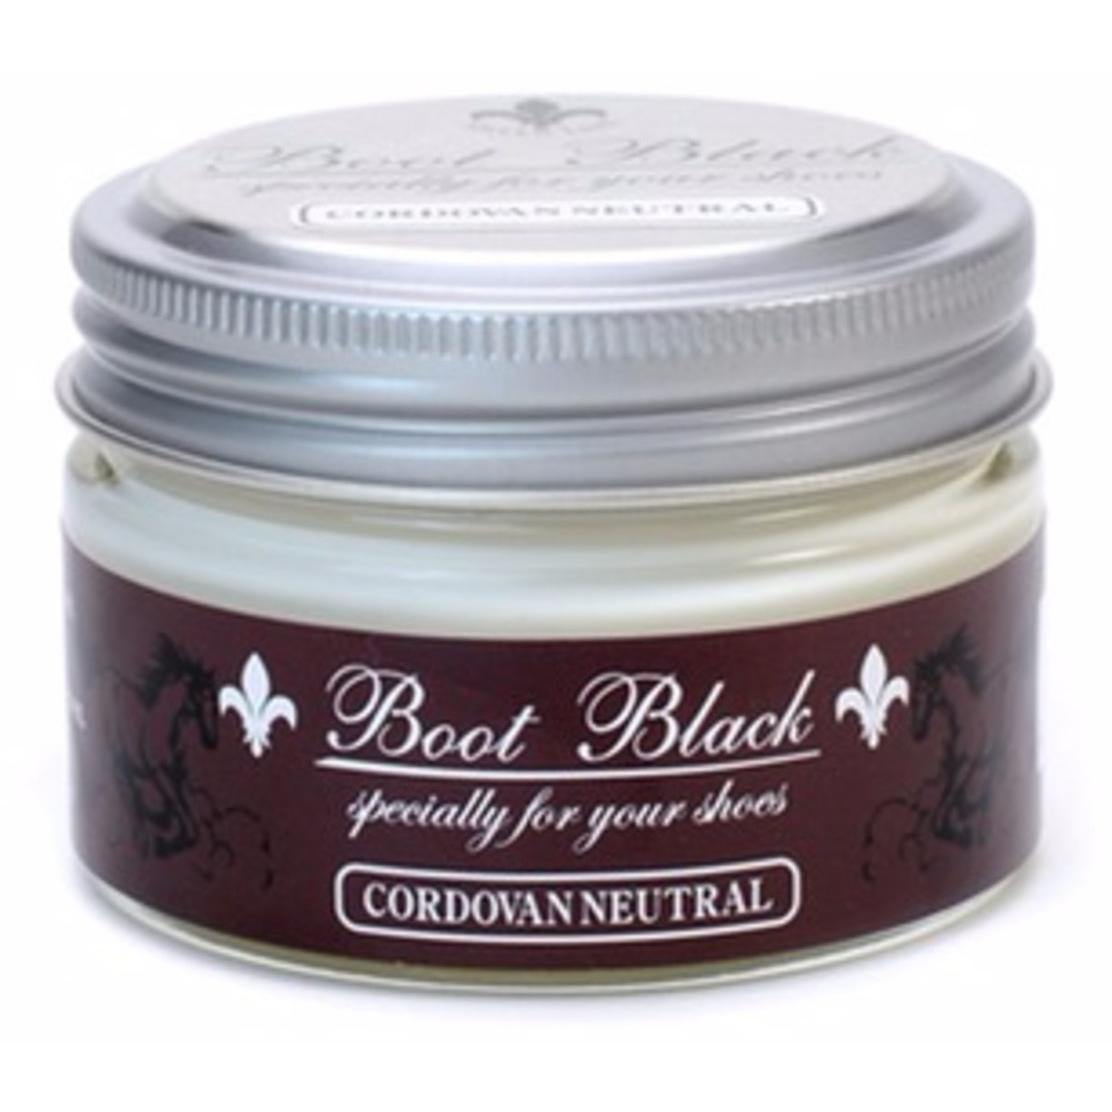 Boot Black Silver Line Cordovan Shell Cream - Trimly